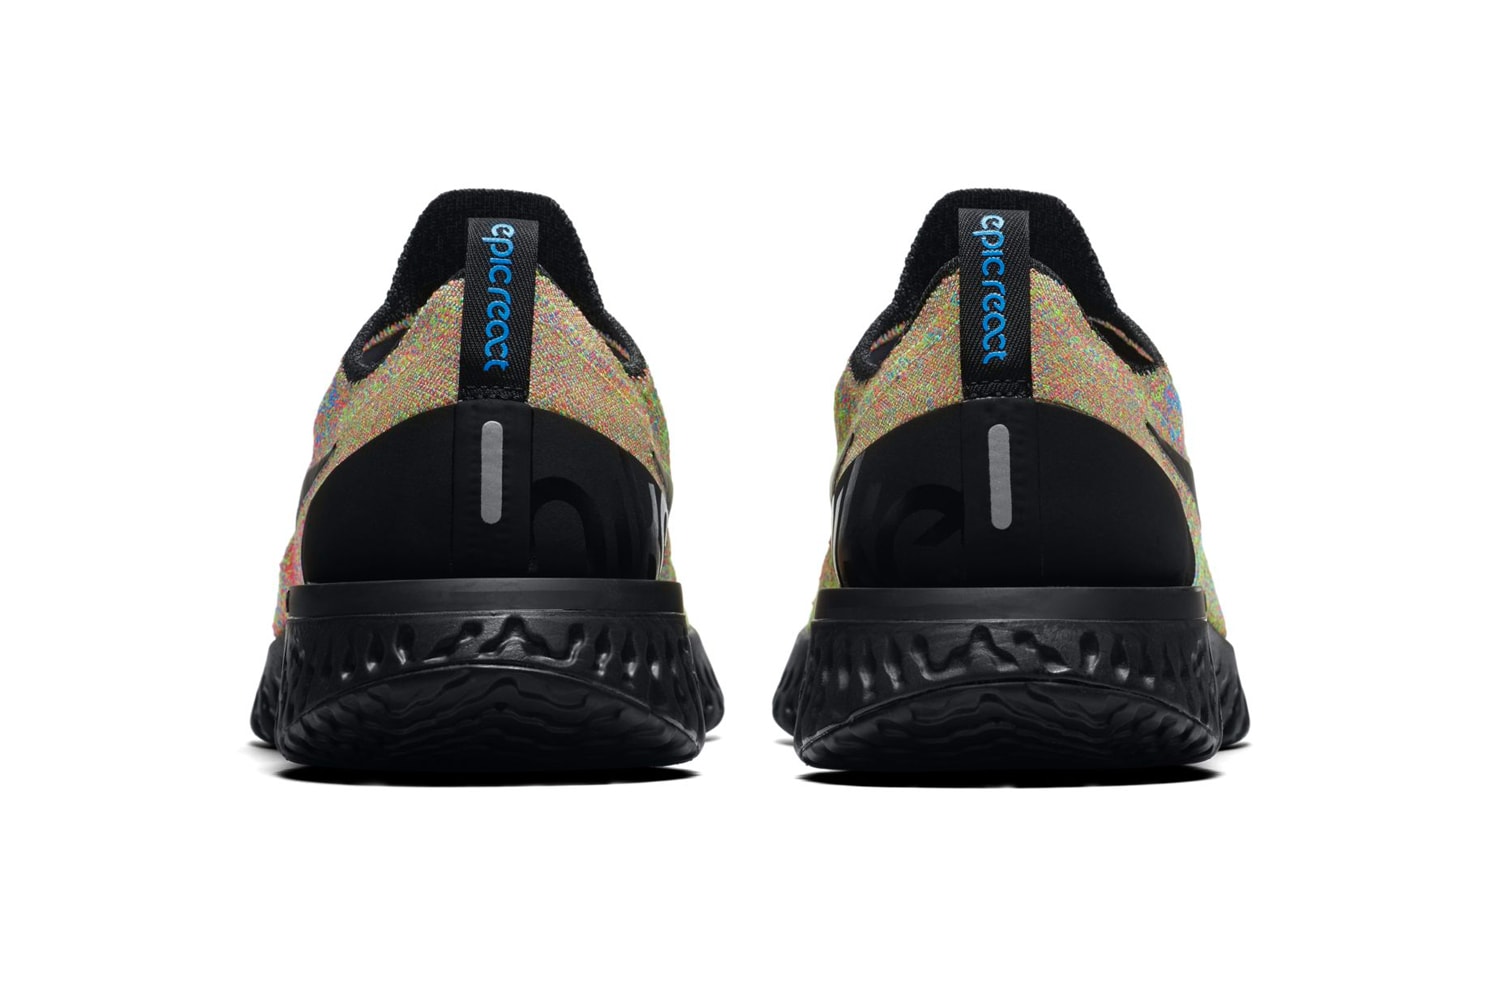 Nike Epic React Flyknit Multicolor Black Volt Blue Glow Release Info Date 